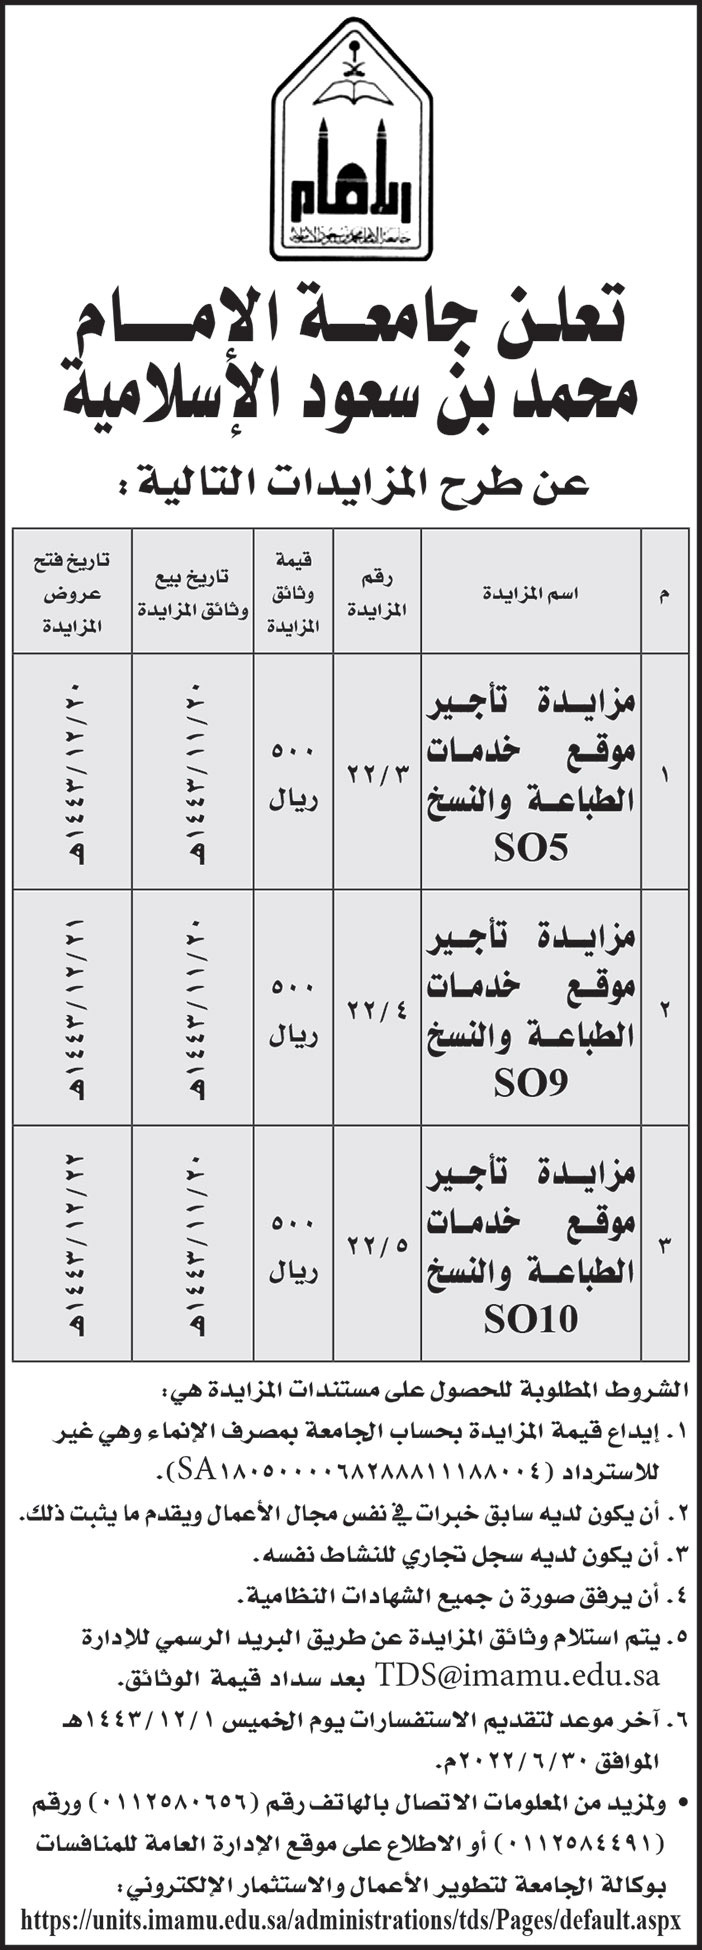 جامعة الإمام محمد بن سعود الإسلامية تطرح مزايدة تأجير موقع خدمات الطباعة والنسخ (SO5) ومزايدة تأجير موقع خدمات الطباعة والنسخ (SO9) ومزايدة تأجير موقع خدمات الطباعة والنسخ (SO10) 